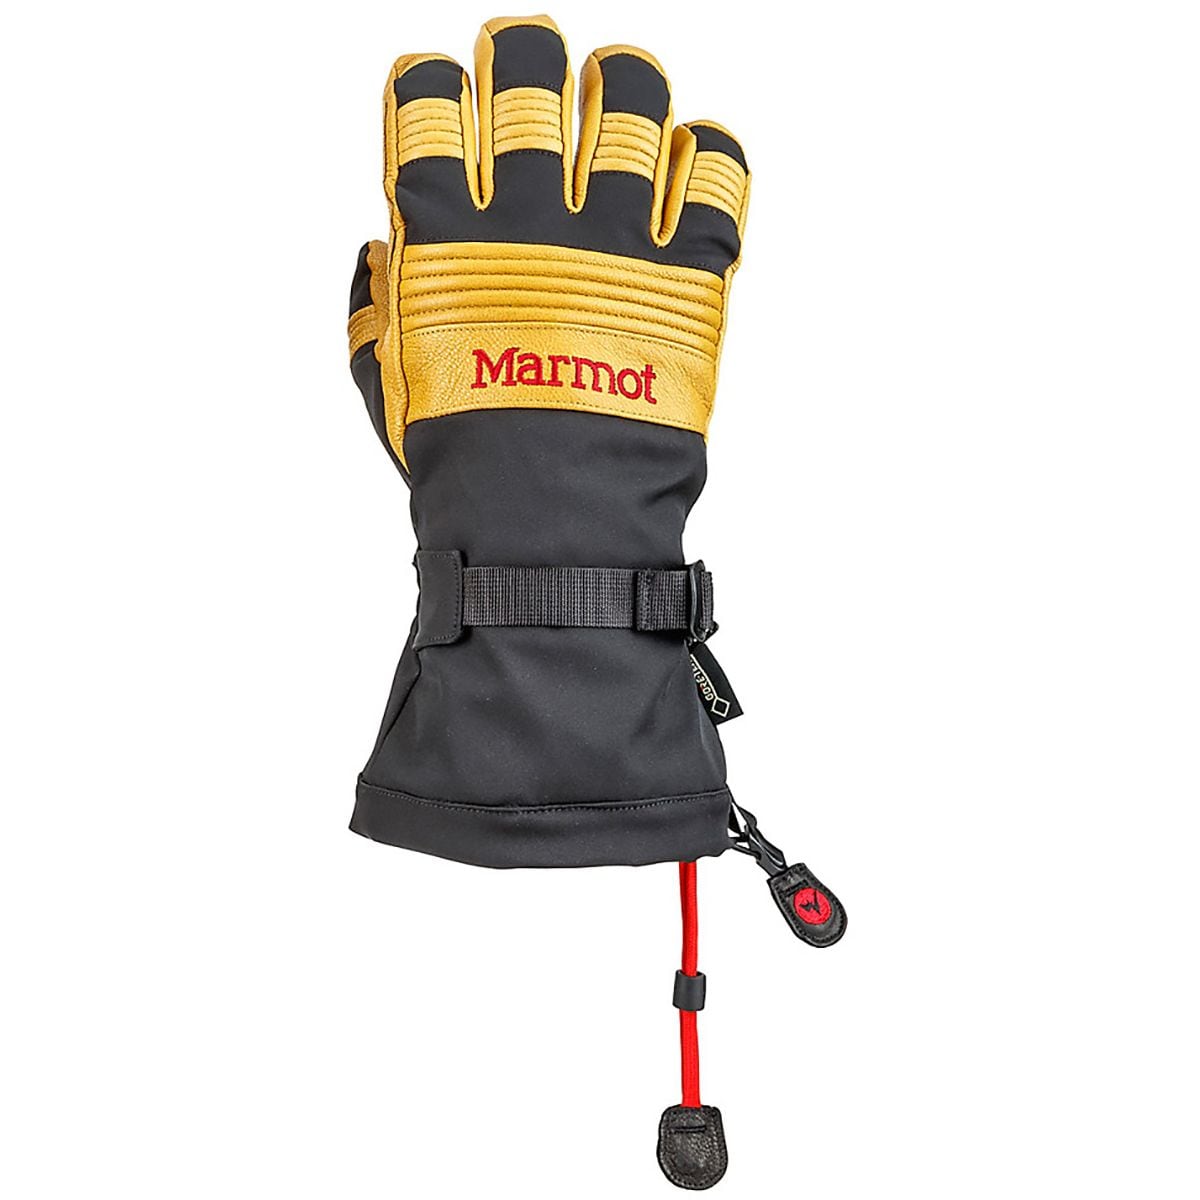 Marmot Ultimate Ski Glove - Men's Black/Tan